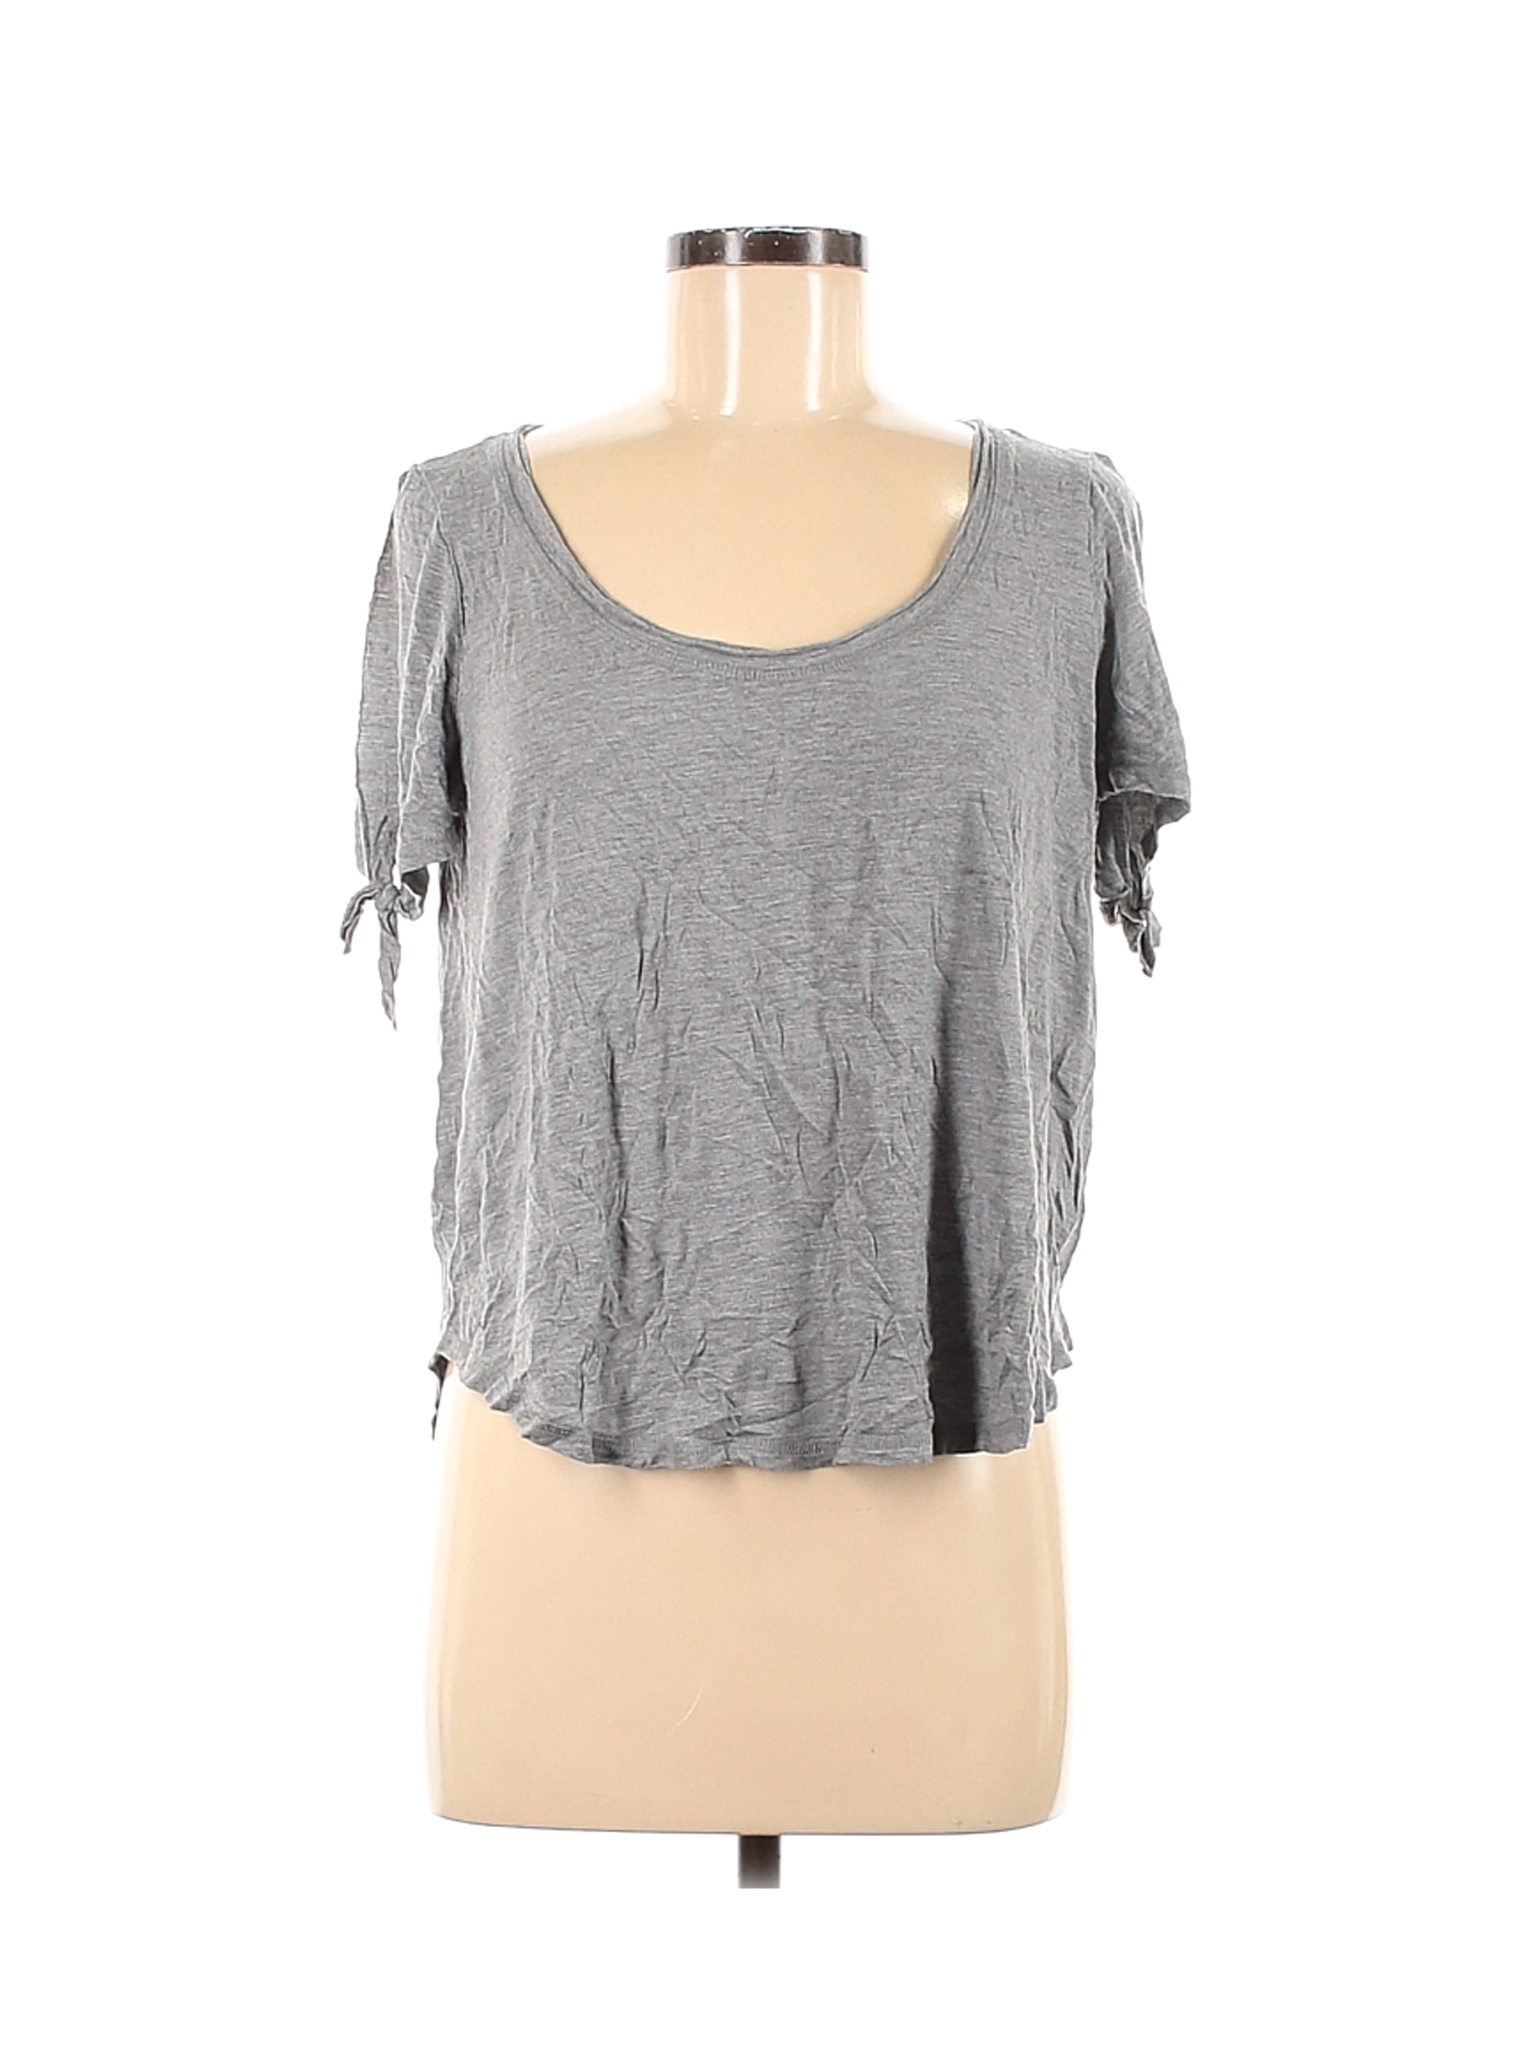 RACHEL Rachel Roy Women Gray Short Sleeve Top M | eBay